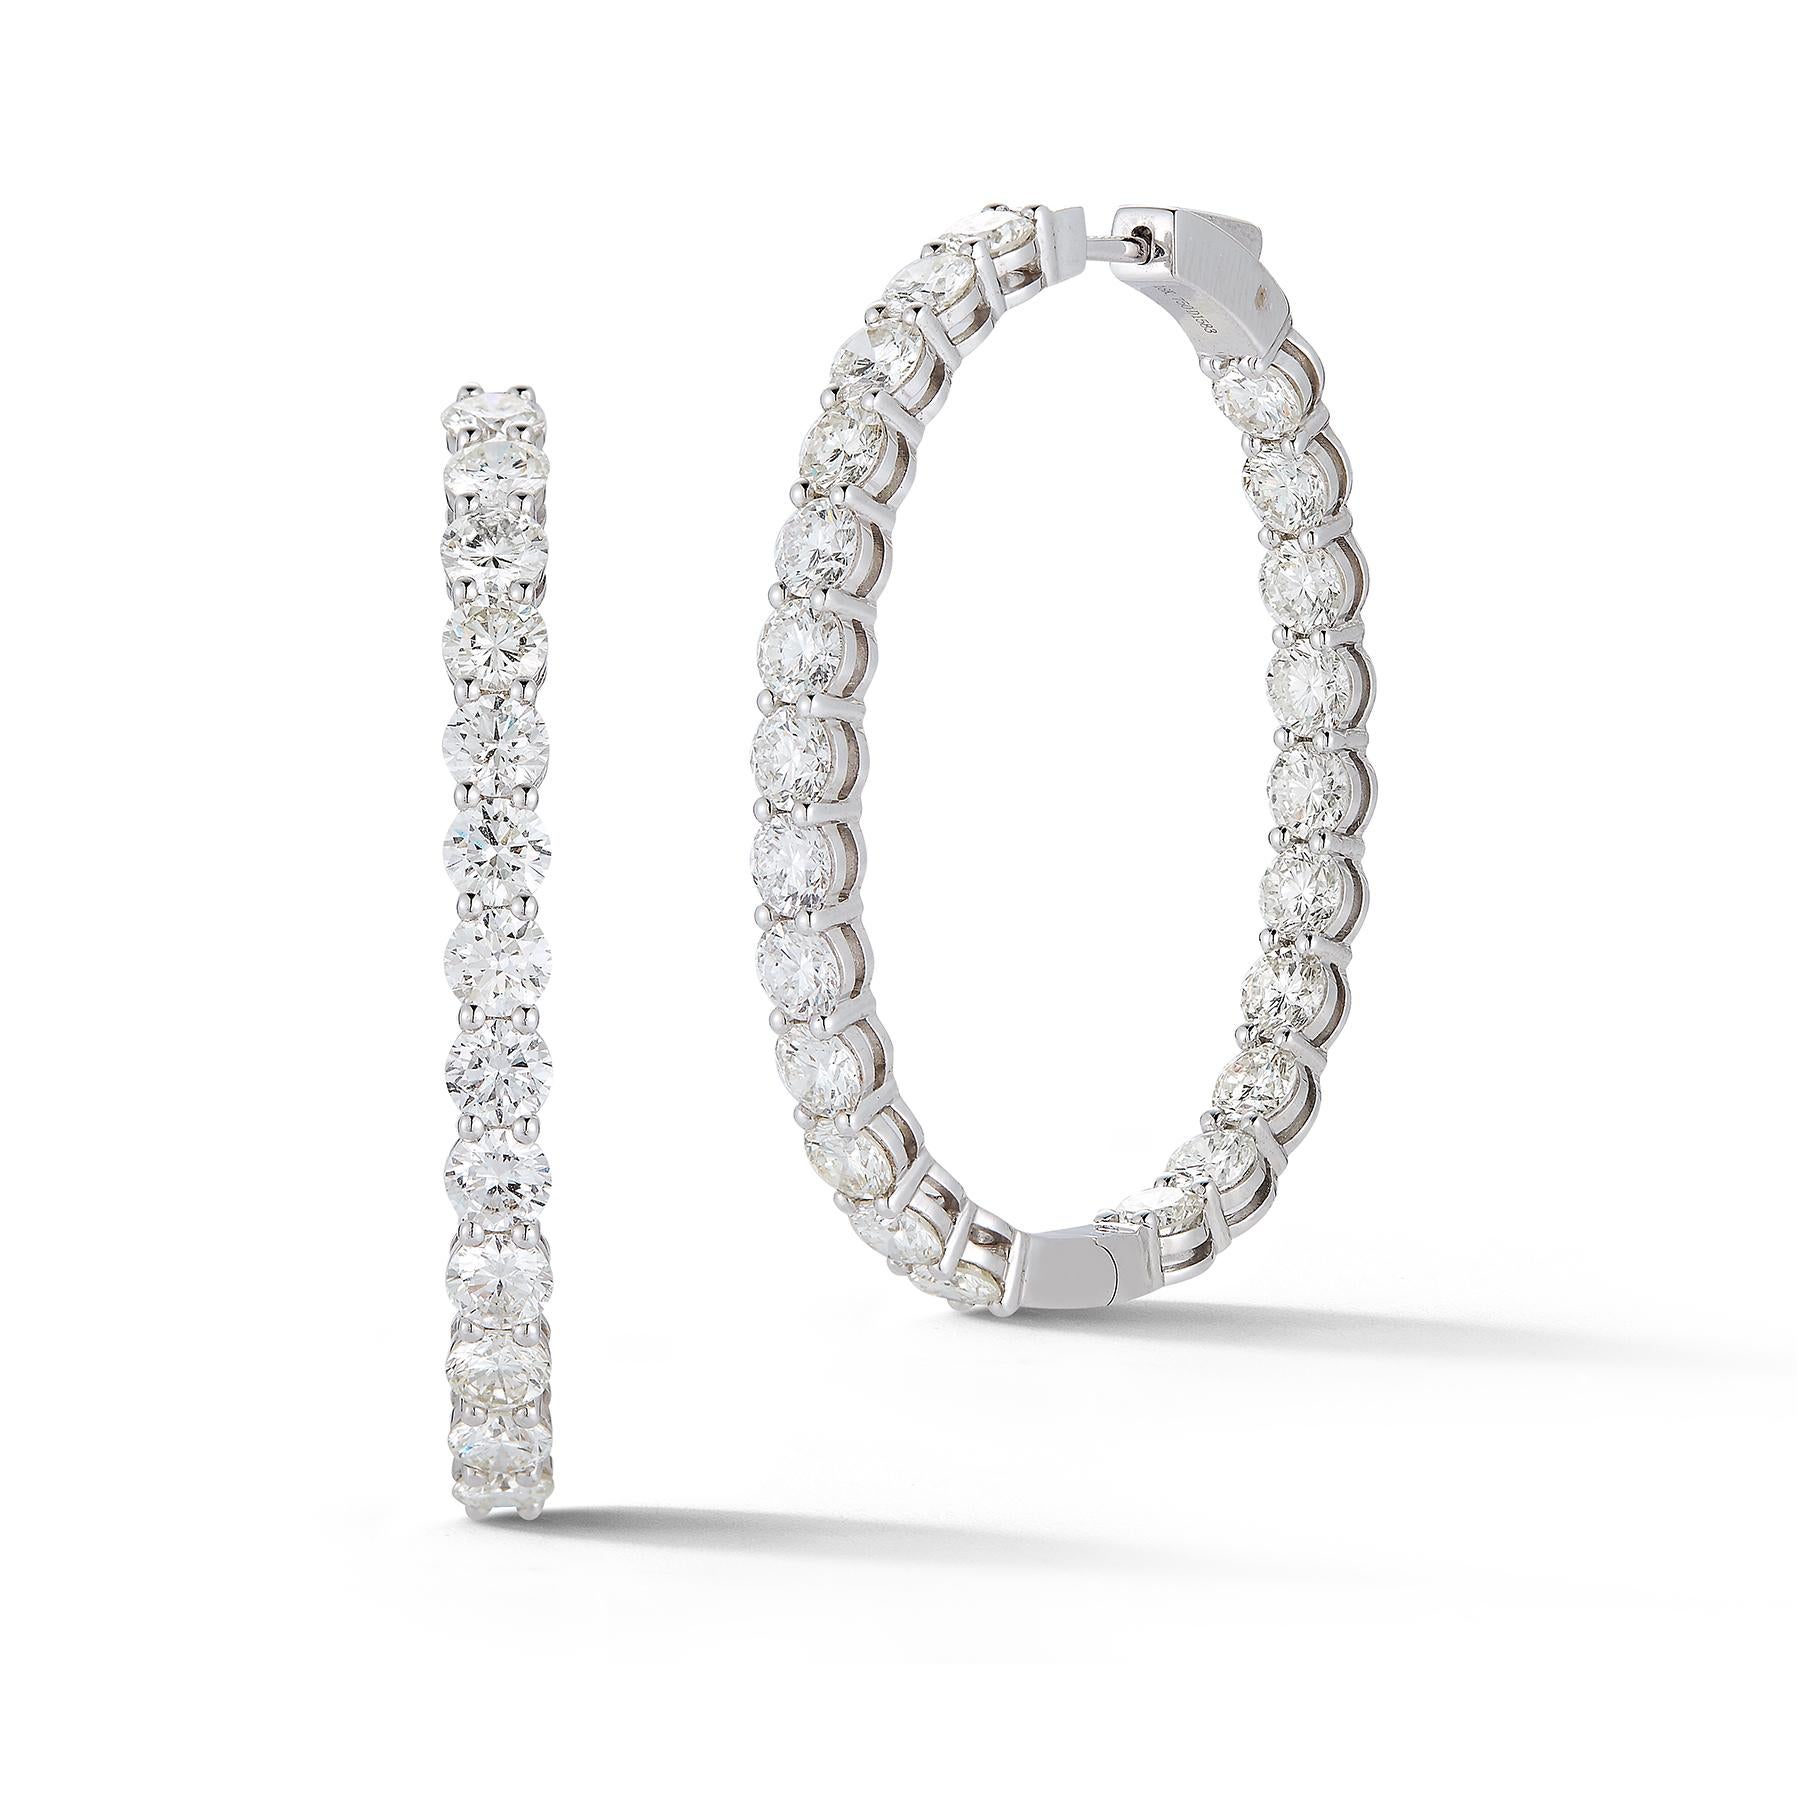 Schöne 18K Weißgold Classic, und so edel, Diamond Hoop Earrings, mit 46 Diamanten mit einem Gesamtgewicht von 15,83 Karat.